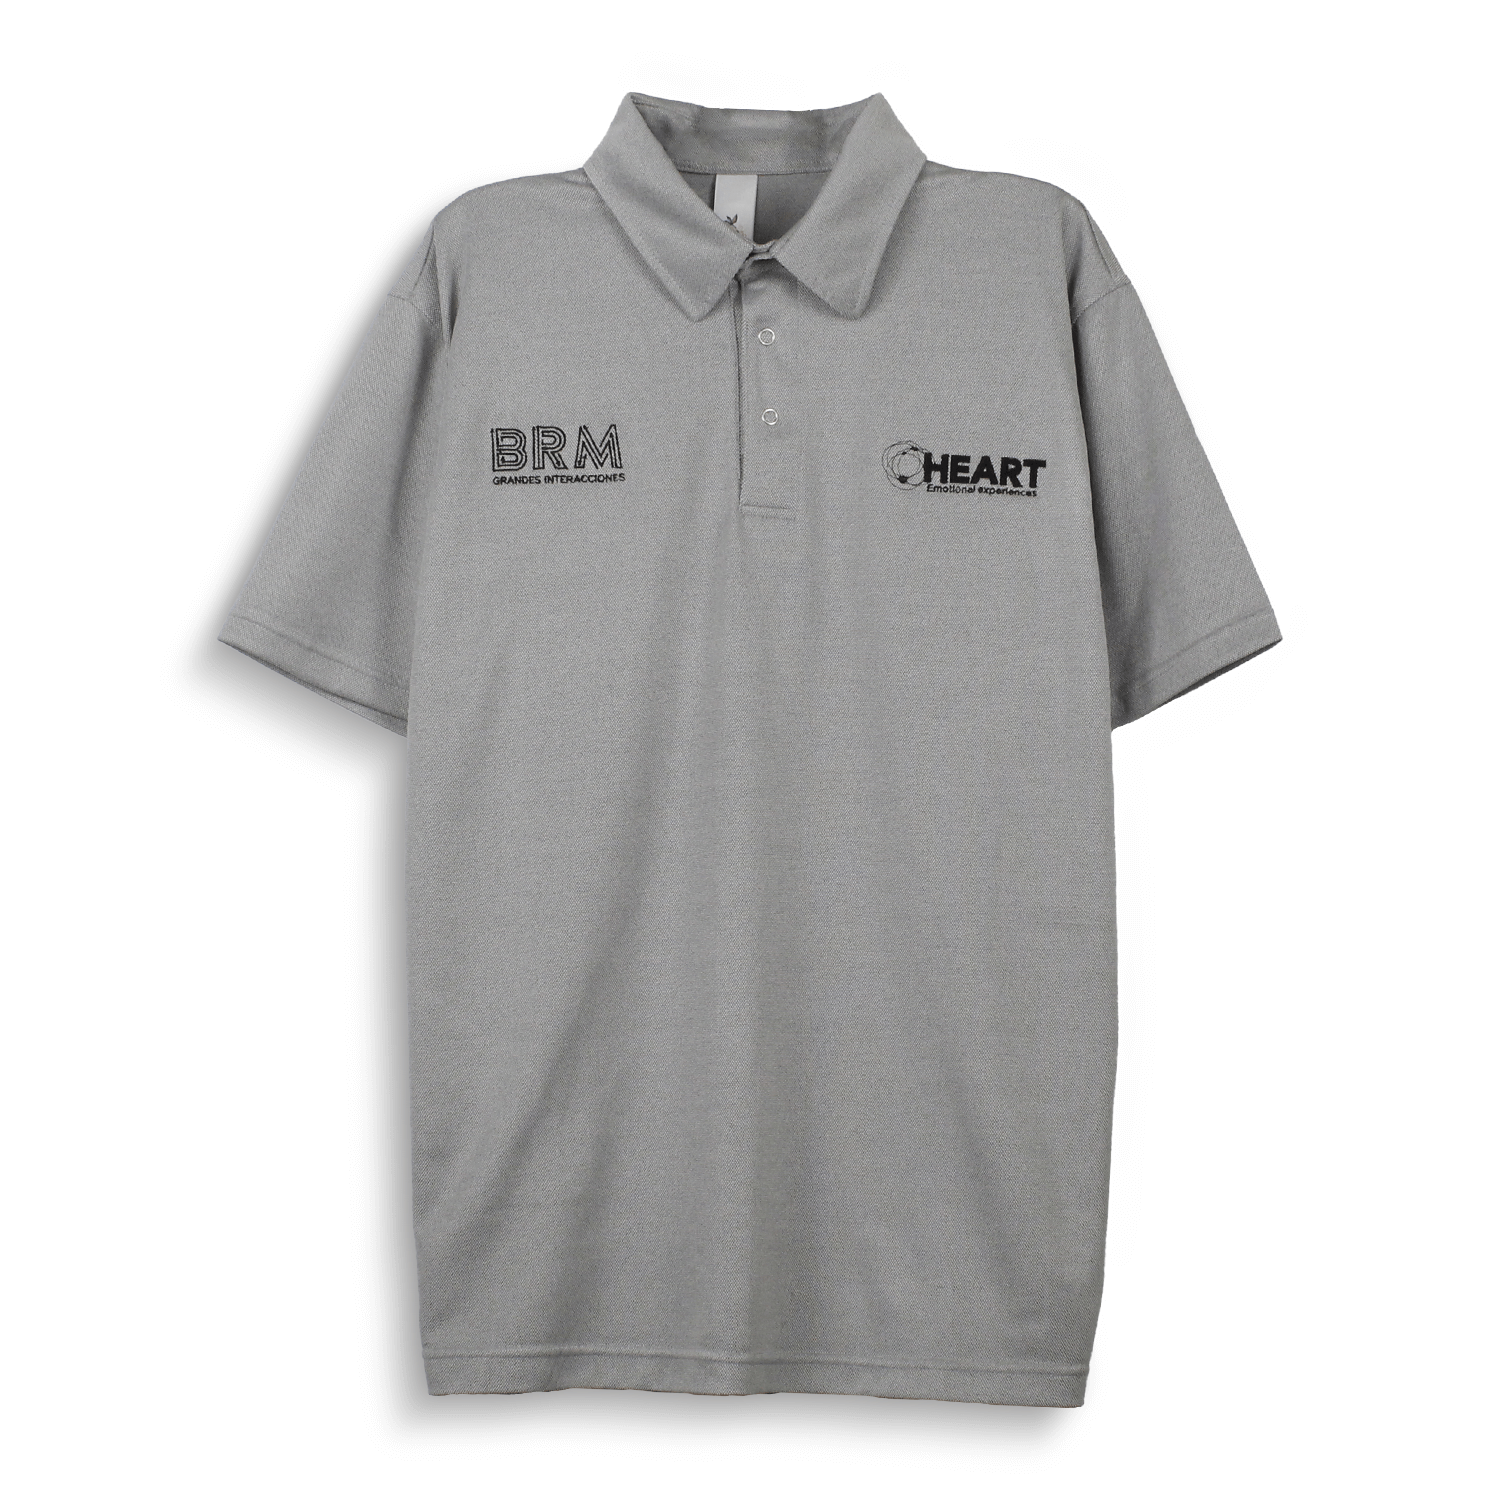 Camiseta tipo polo manga corta en variedad de materiales y marcaciones.